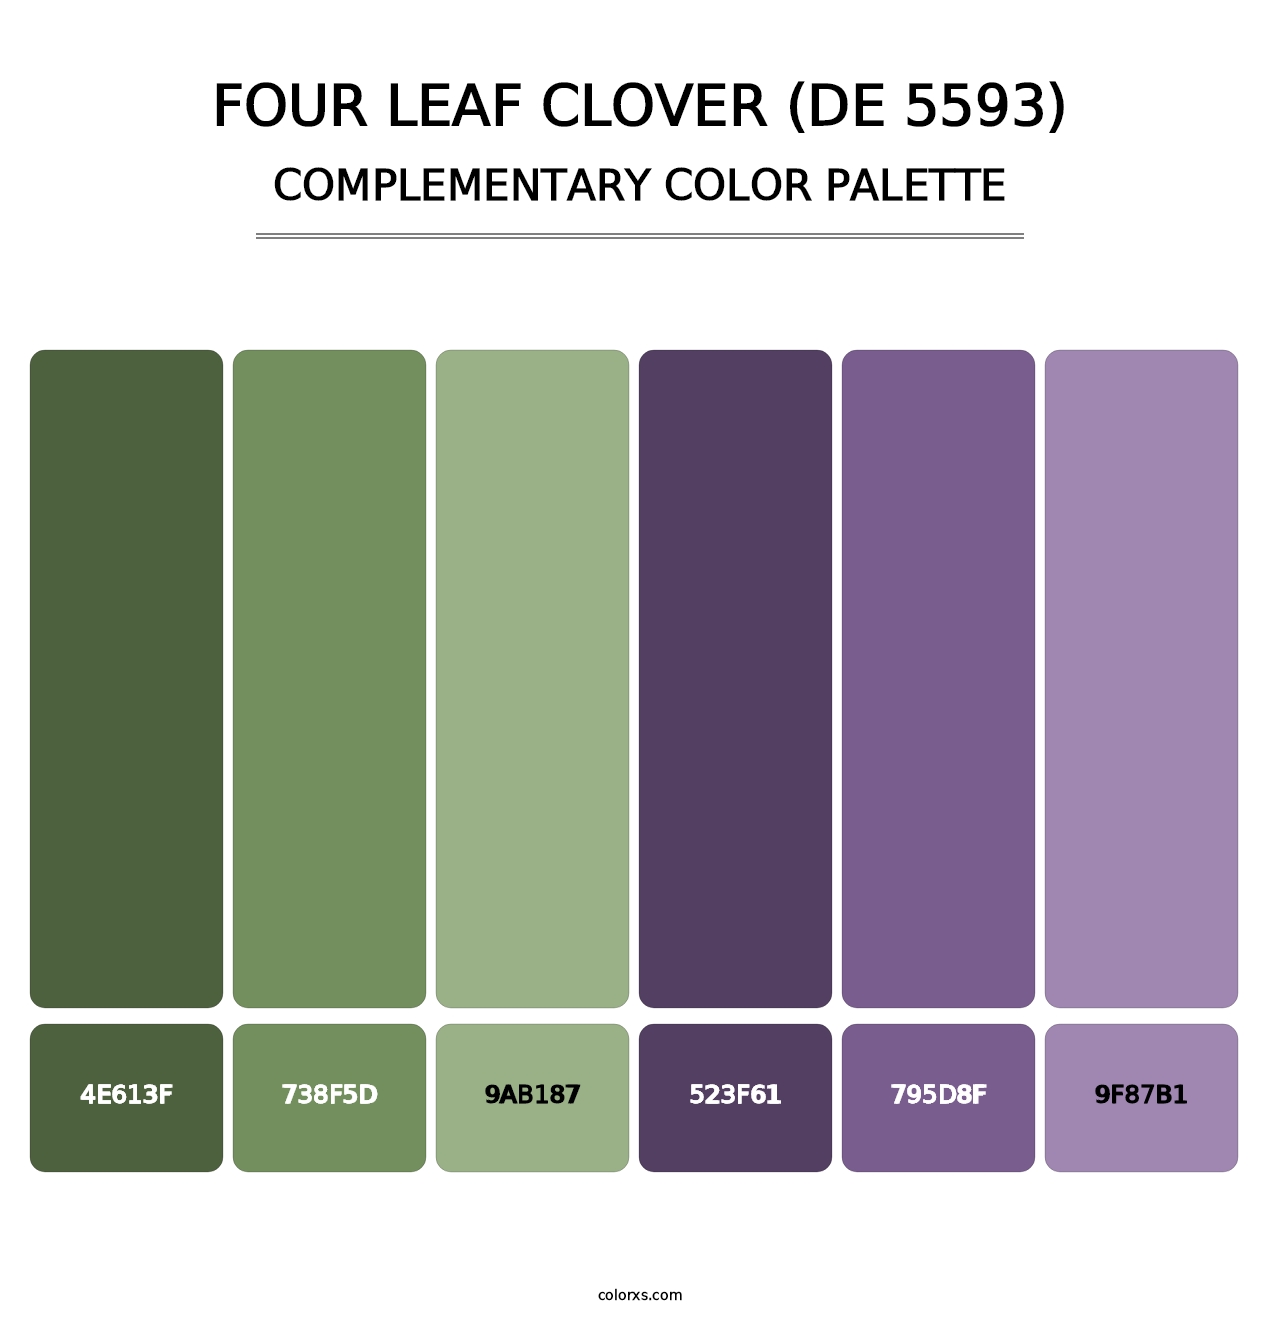 Four Leaf Clover (DE 5593) - Complementary Color Palette